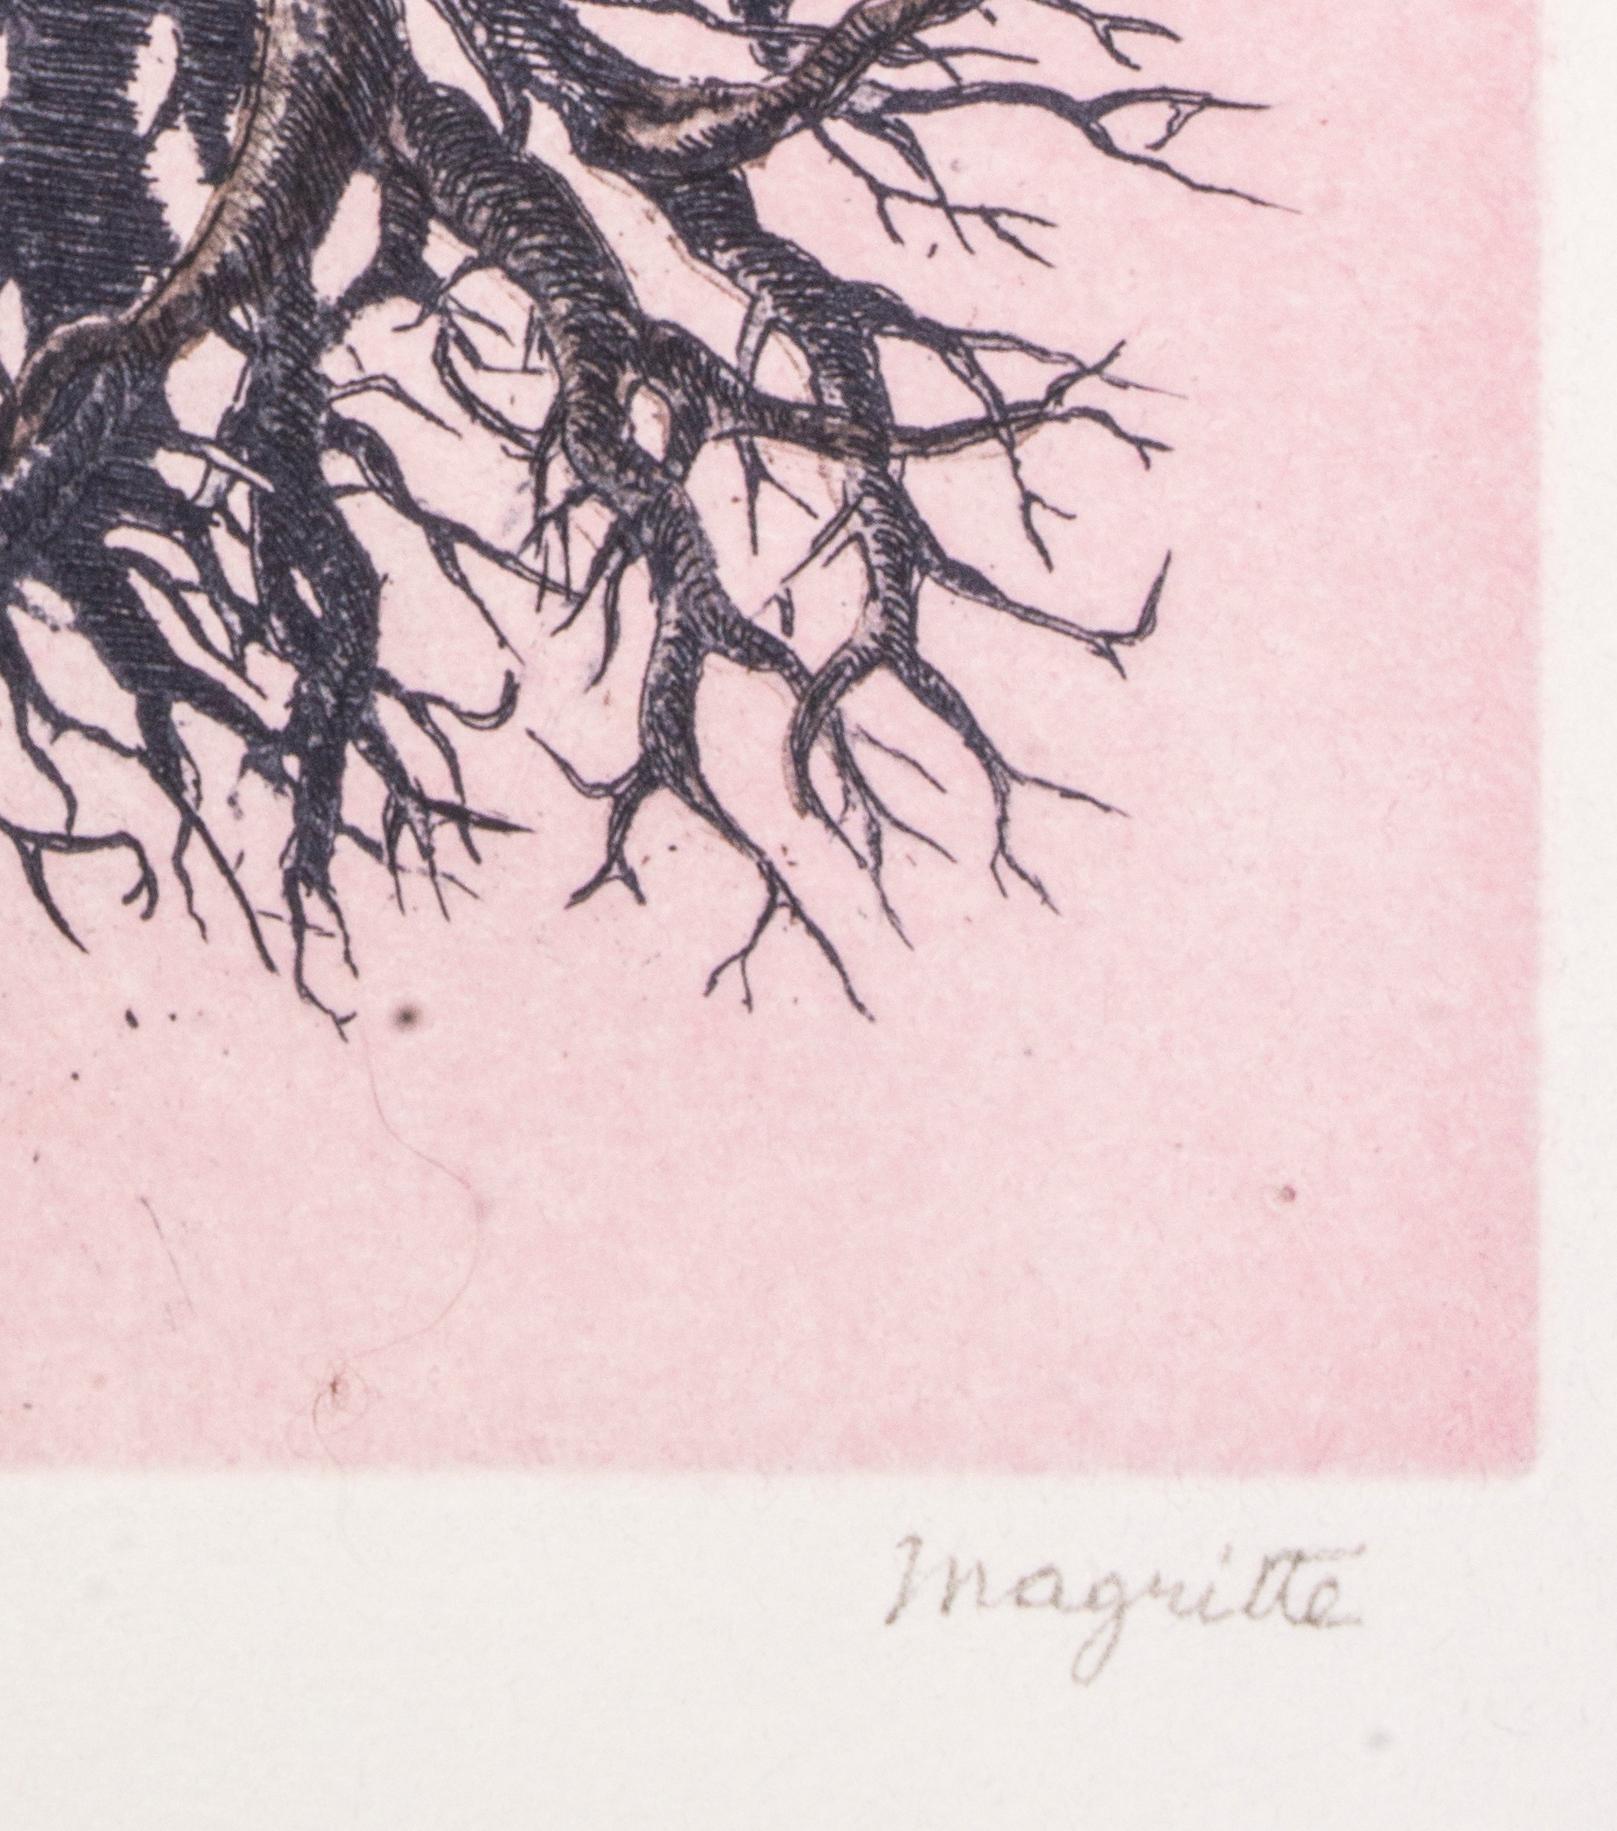 La Folie Almayer ou L'Arbre Rose - Original Etching After René Magritte - 1968 - Surrealist Print by (after) René Magritte